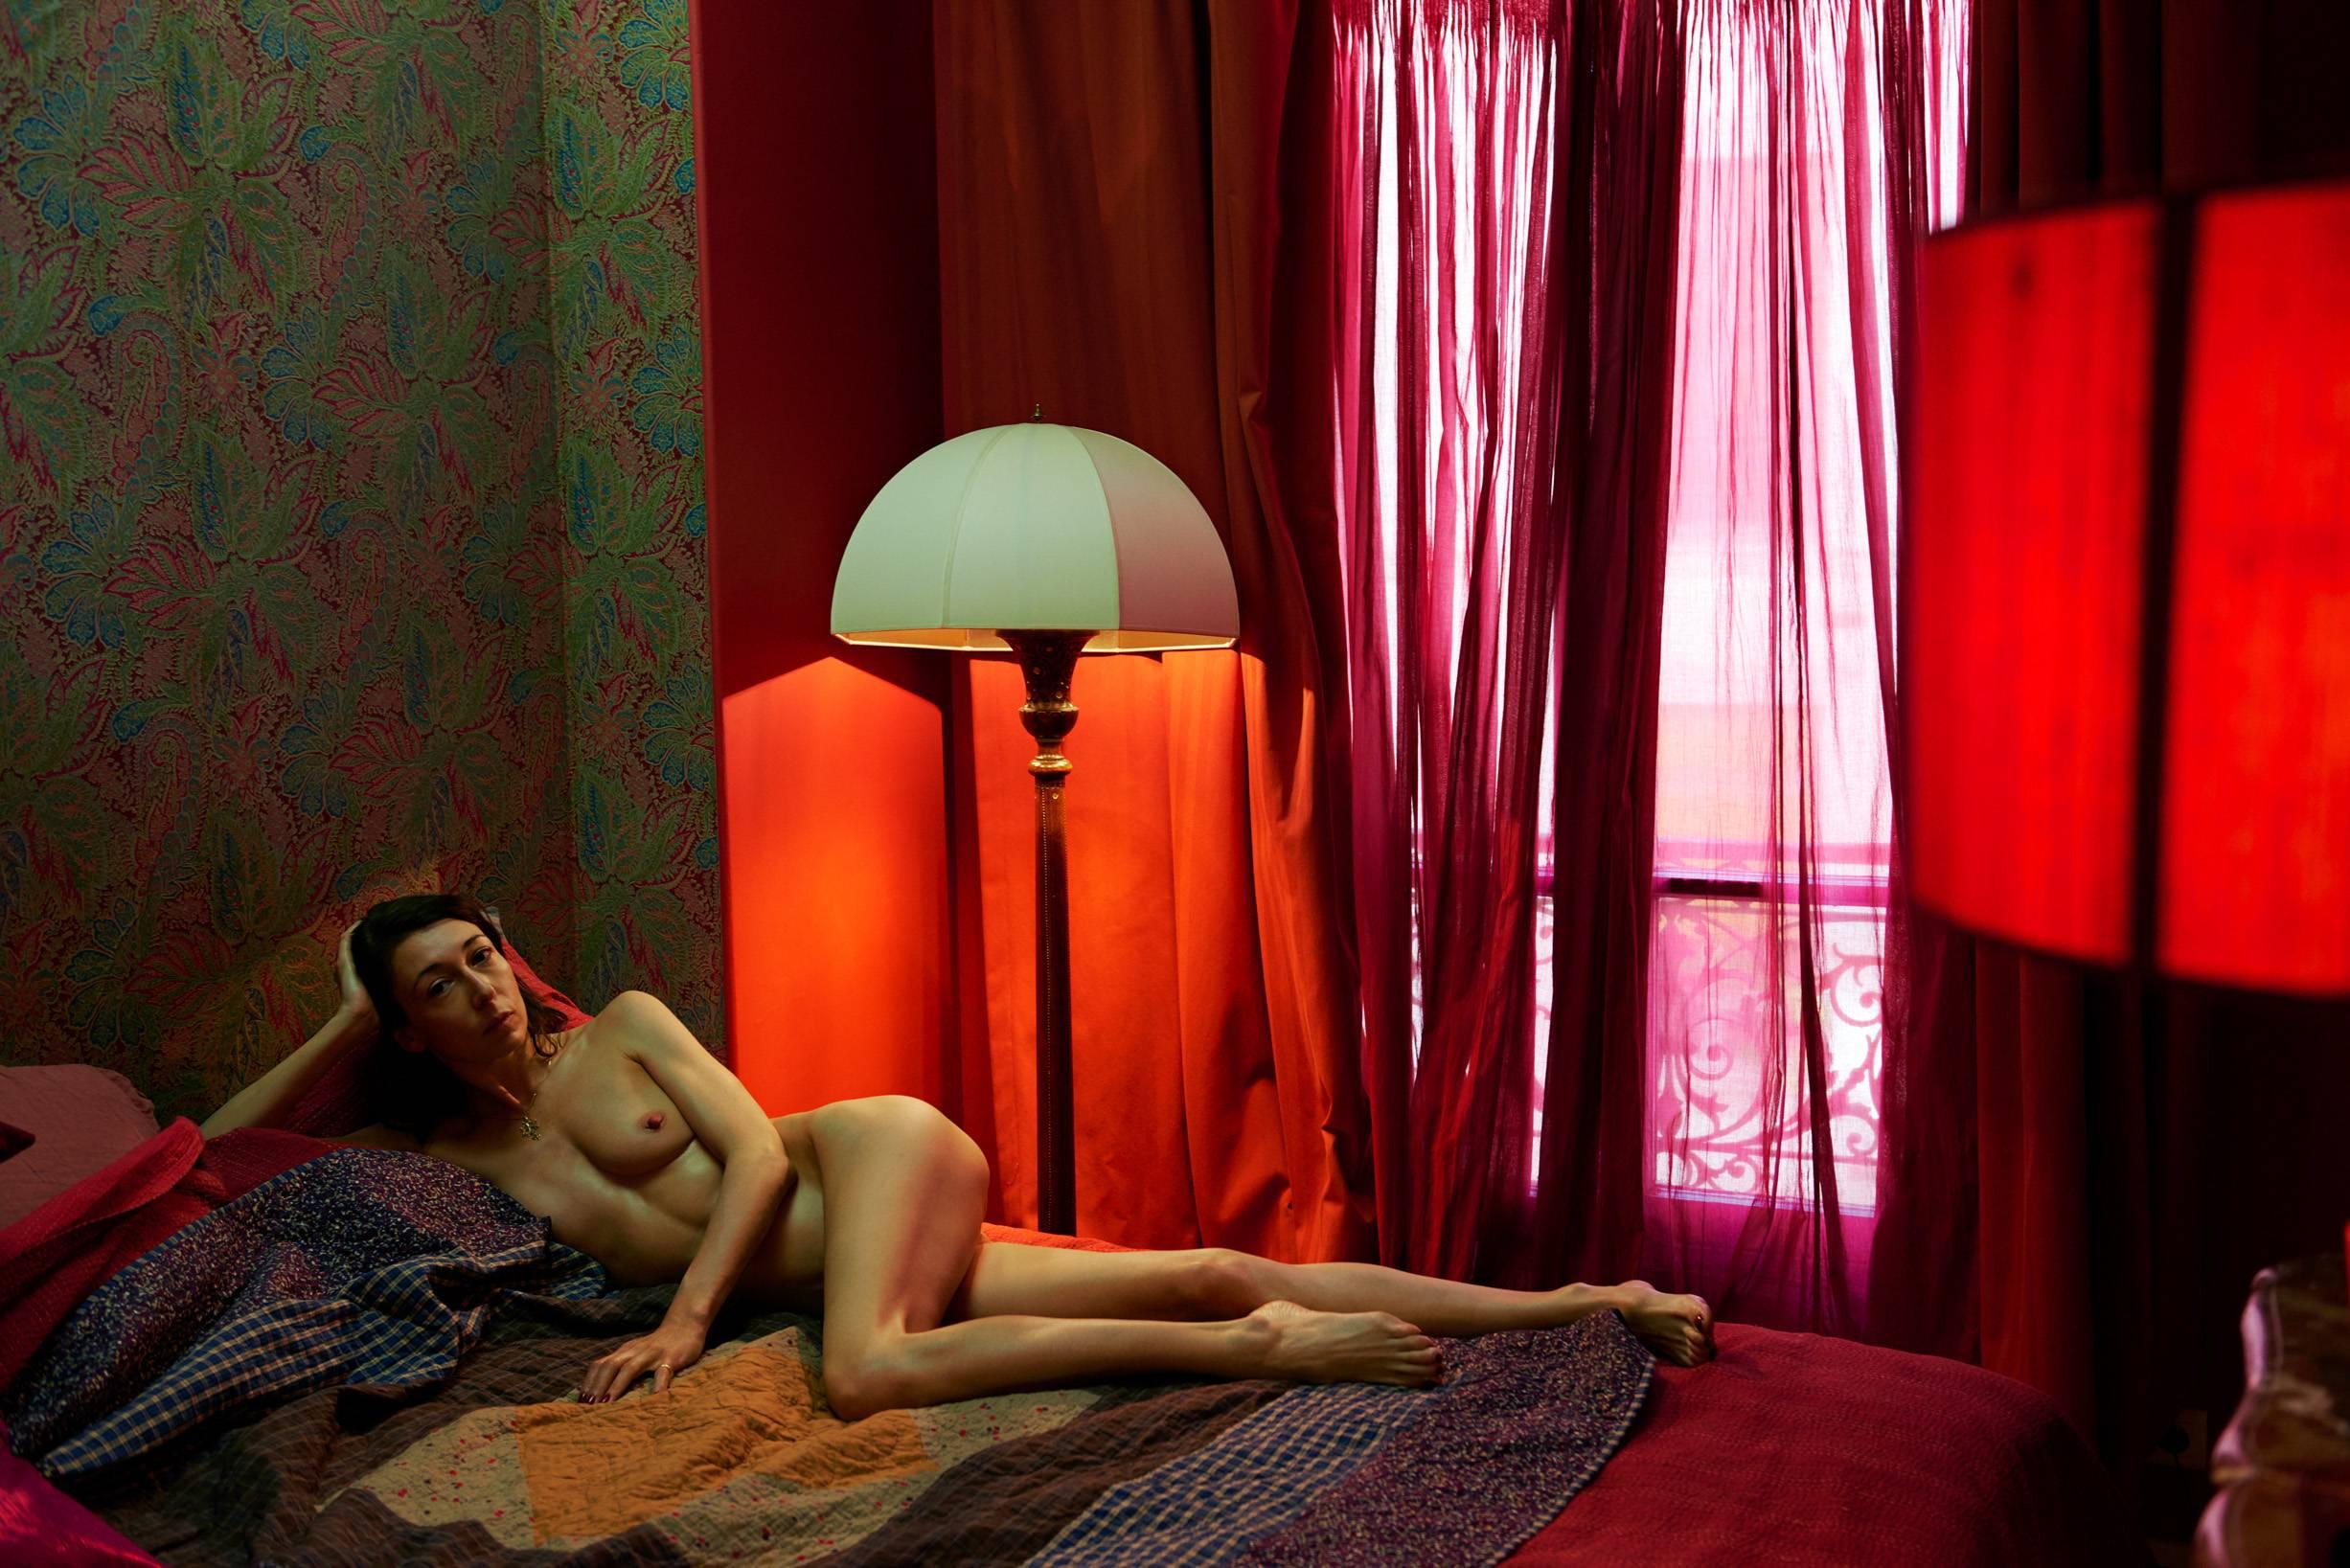 Sonia Sieff Portrait Photograph – La chambre rouge, Paris, Paris